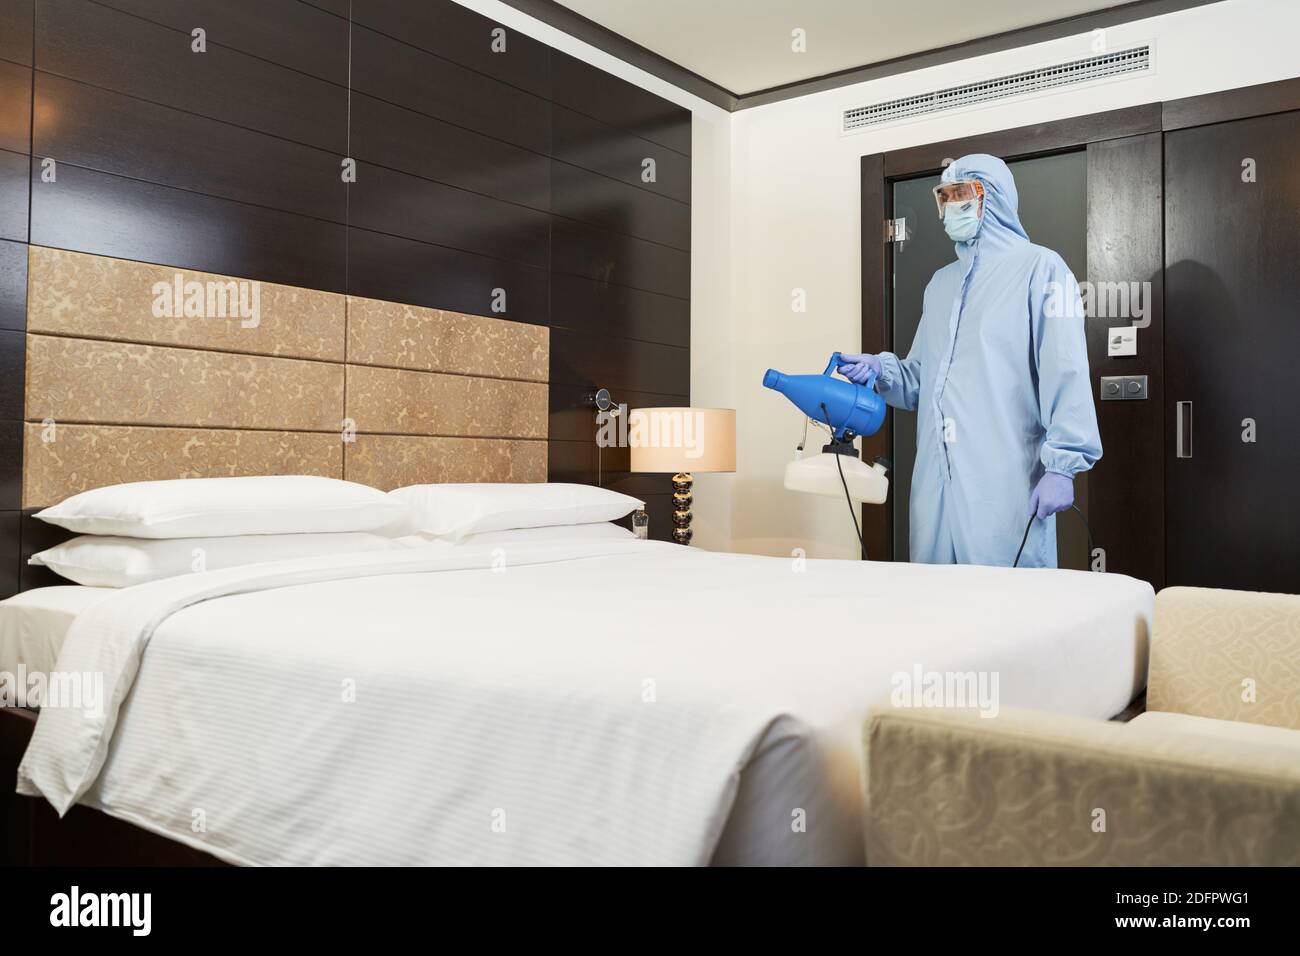 Männliche Desinfektionsmittel im Schutzanzug und Maske sprühen Desinfektionsmittel im Hotelzimmer. Coronavirus und Quarantänekonzept Stockfoto